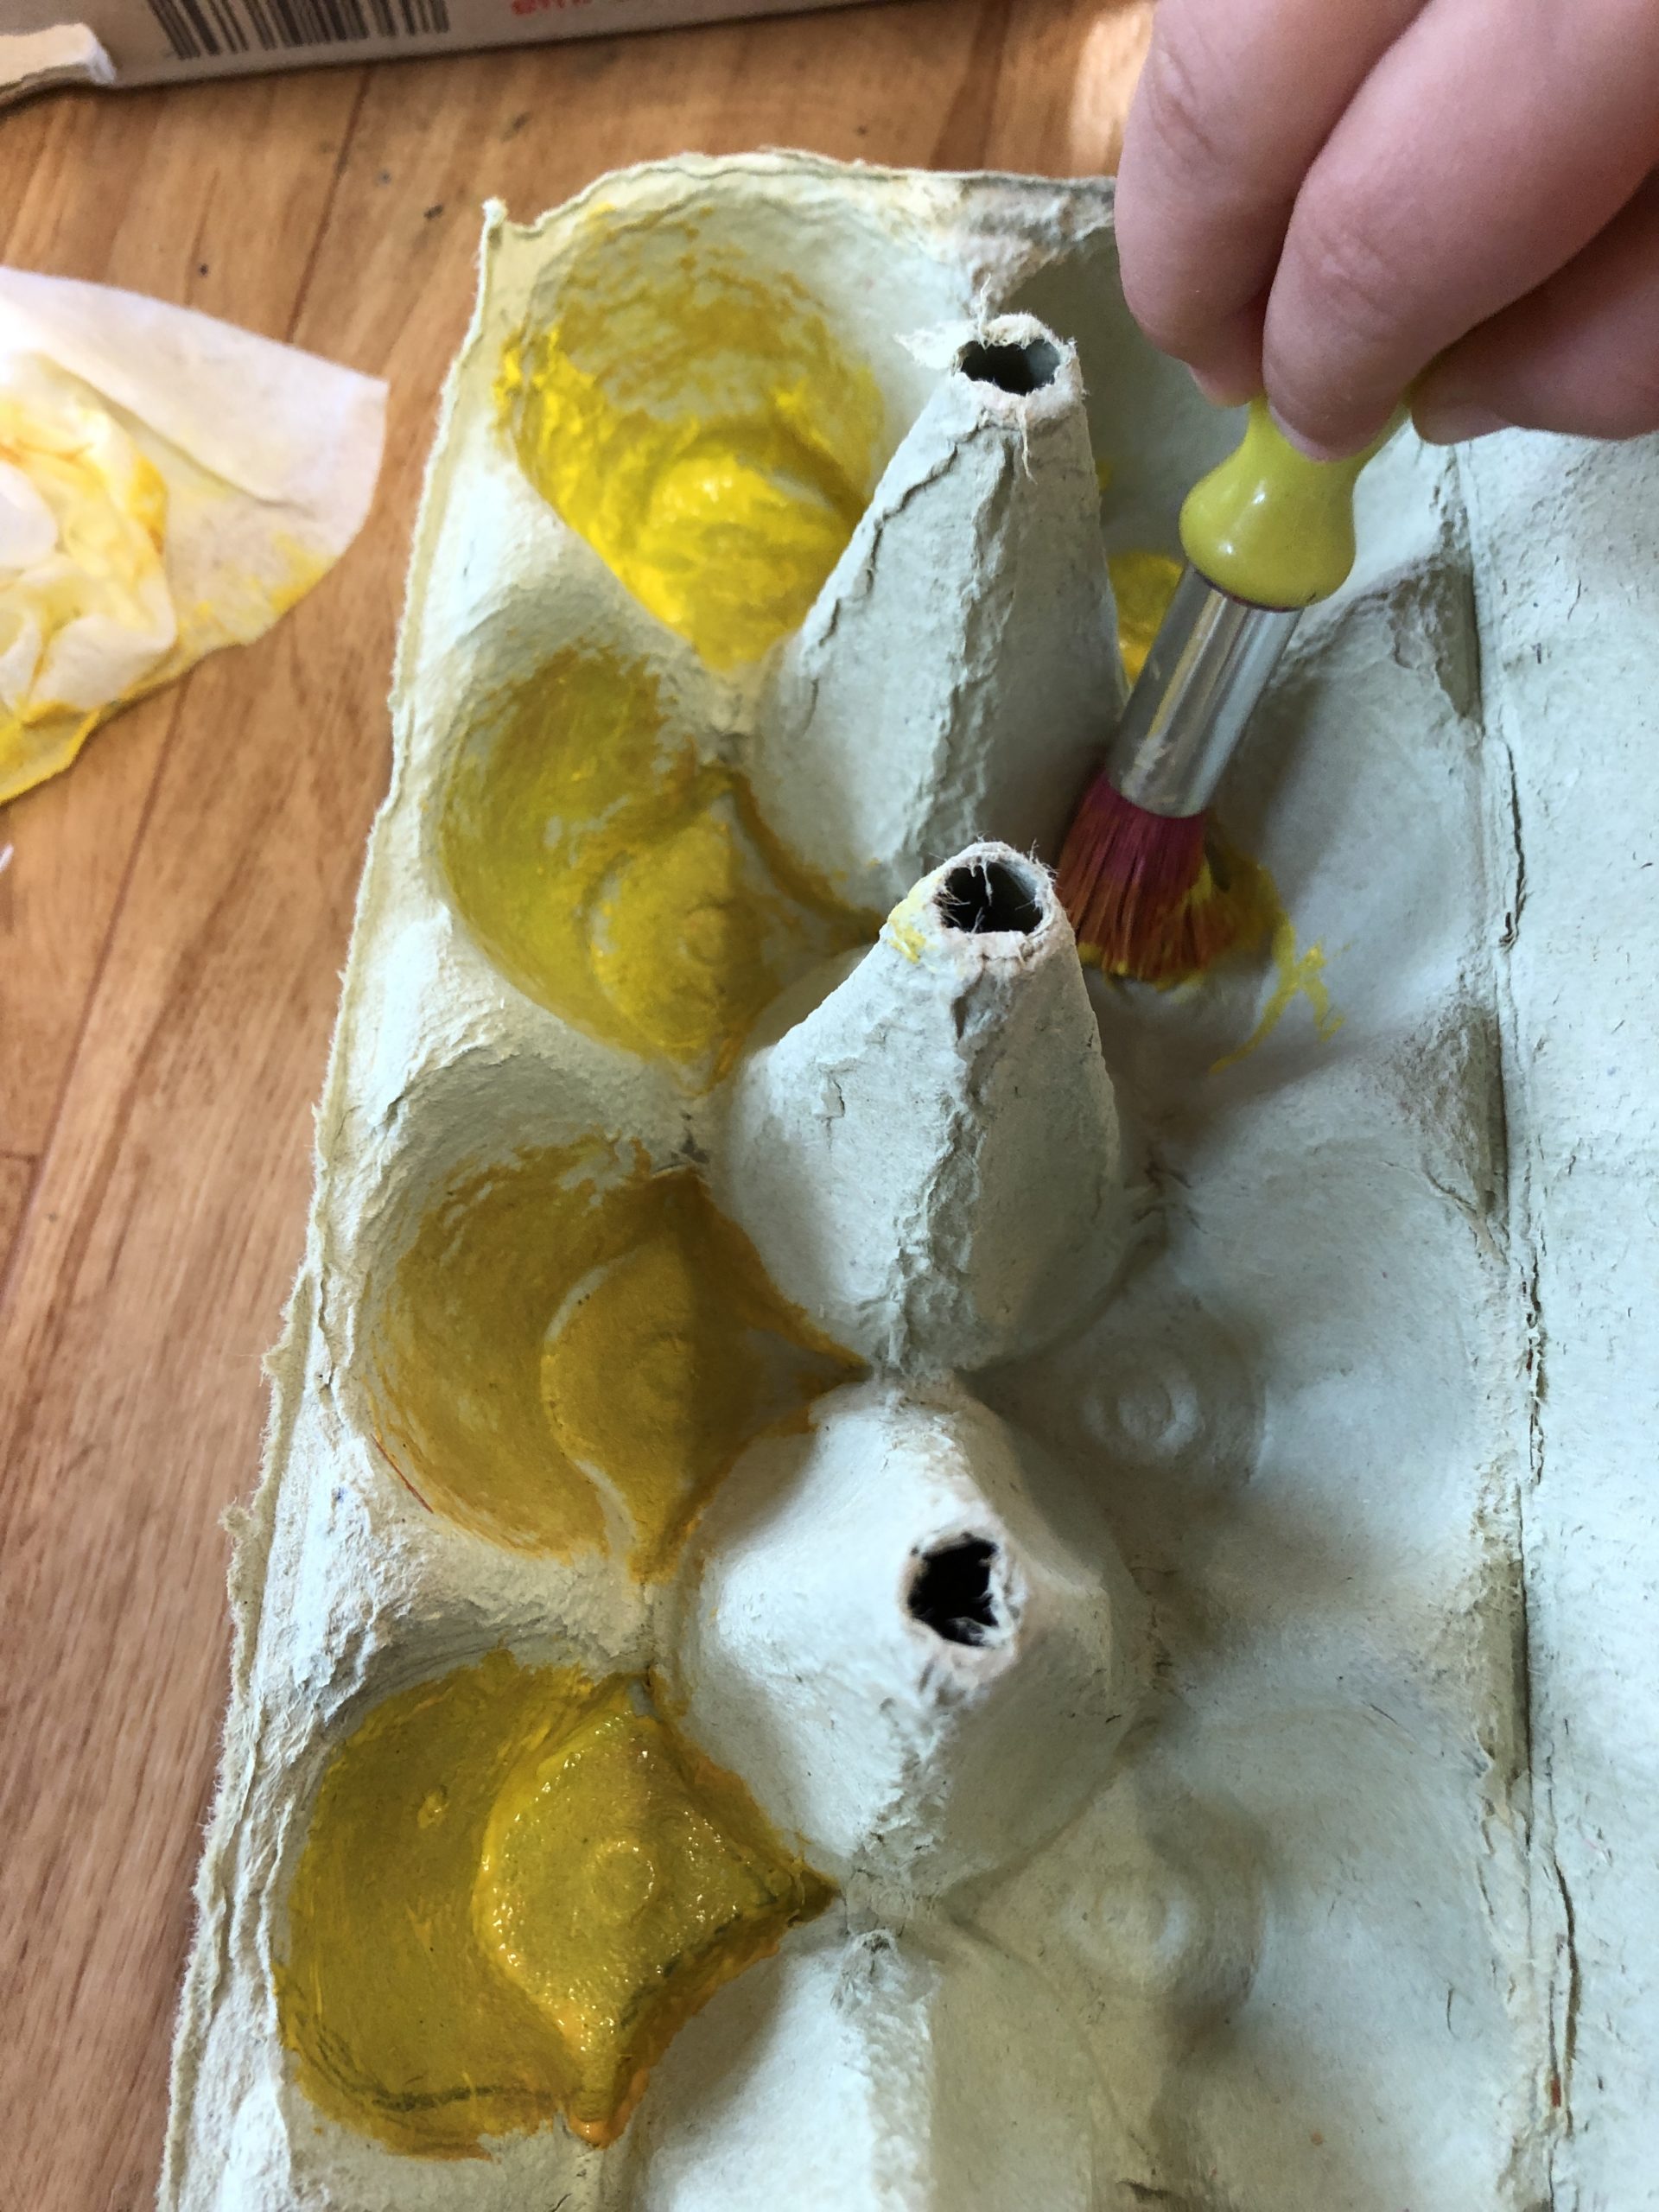 Bild zum Schritt 14 für das Bastel- und DIY-Abenteuer für Kinder: 'Der Eierkarton wird von innen an den Seitenwänden und am...'